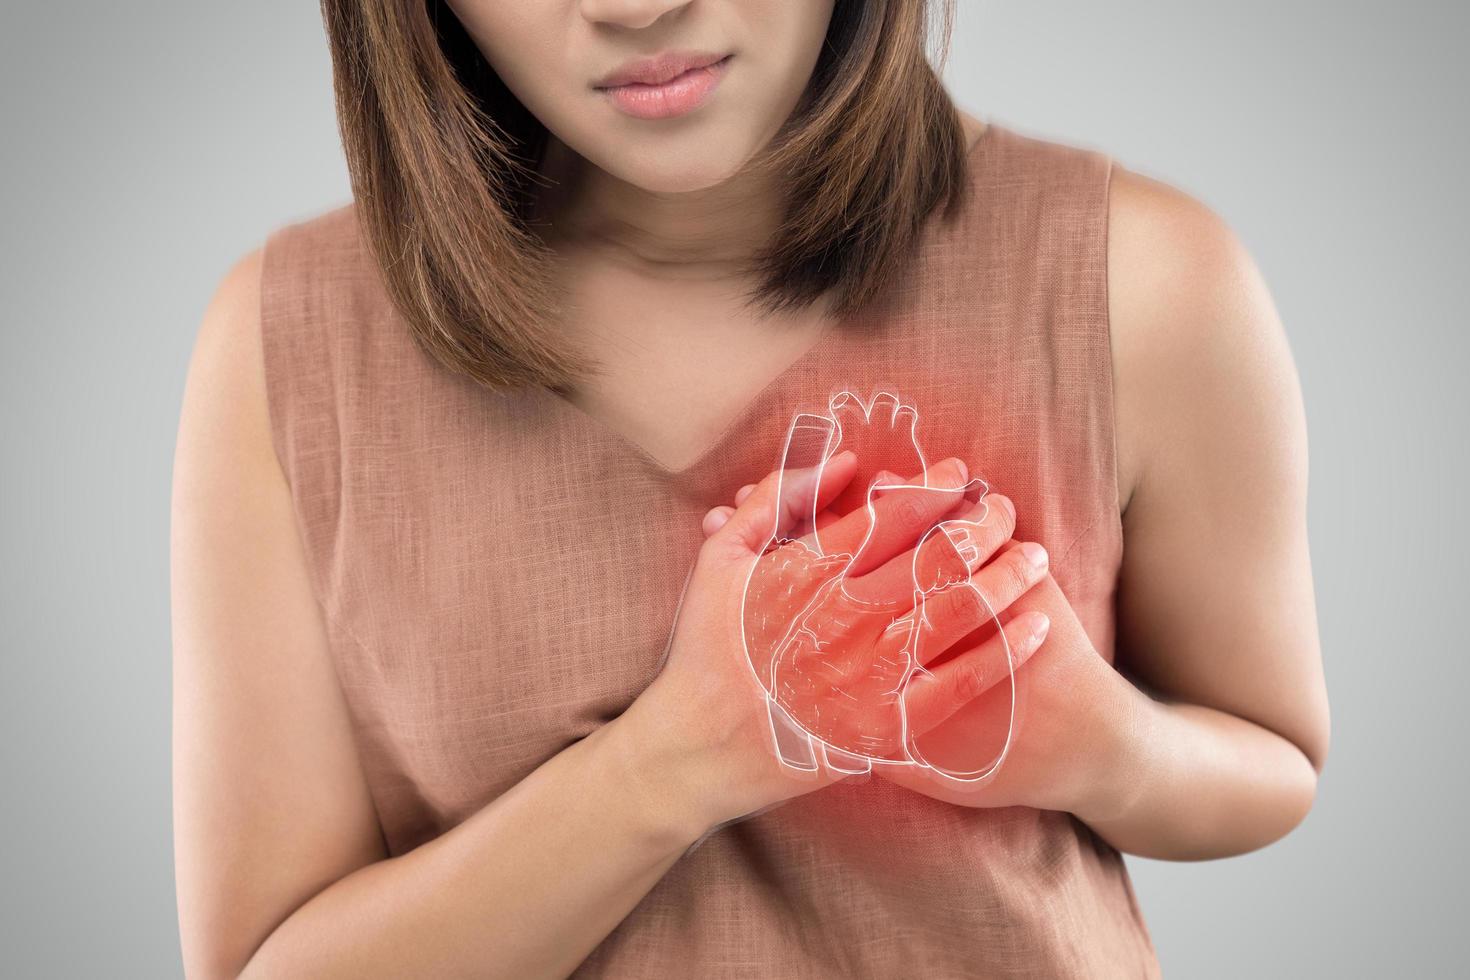 Das Foto des Herzens befindet sich auf dem Körper der Frau, schwerer Herzschmerz, Herzinfarkt oder schmerzhafte Krämpfe, Herzkrankheit, Drücken auf die Brust mit schmerzhaftem Ausdruck.